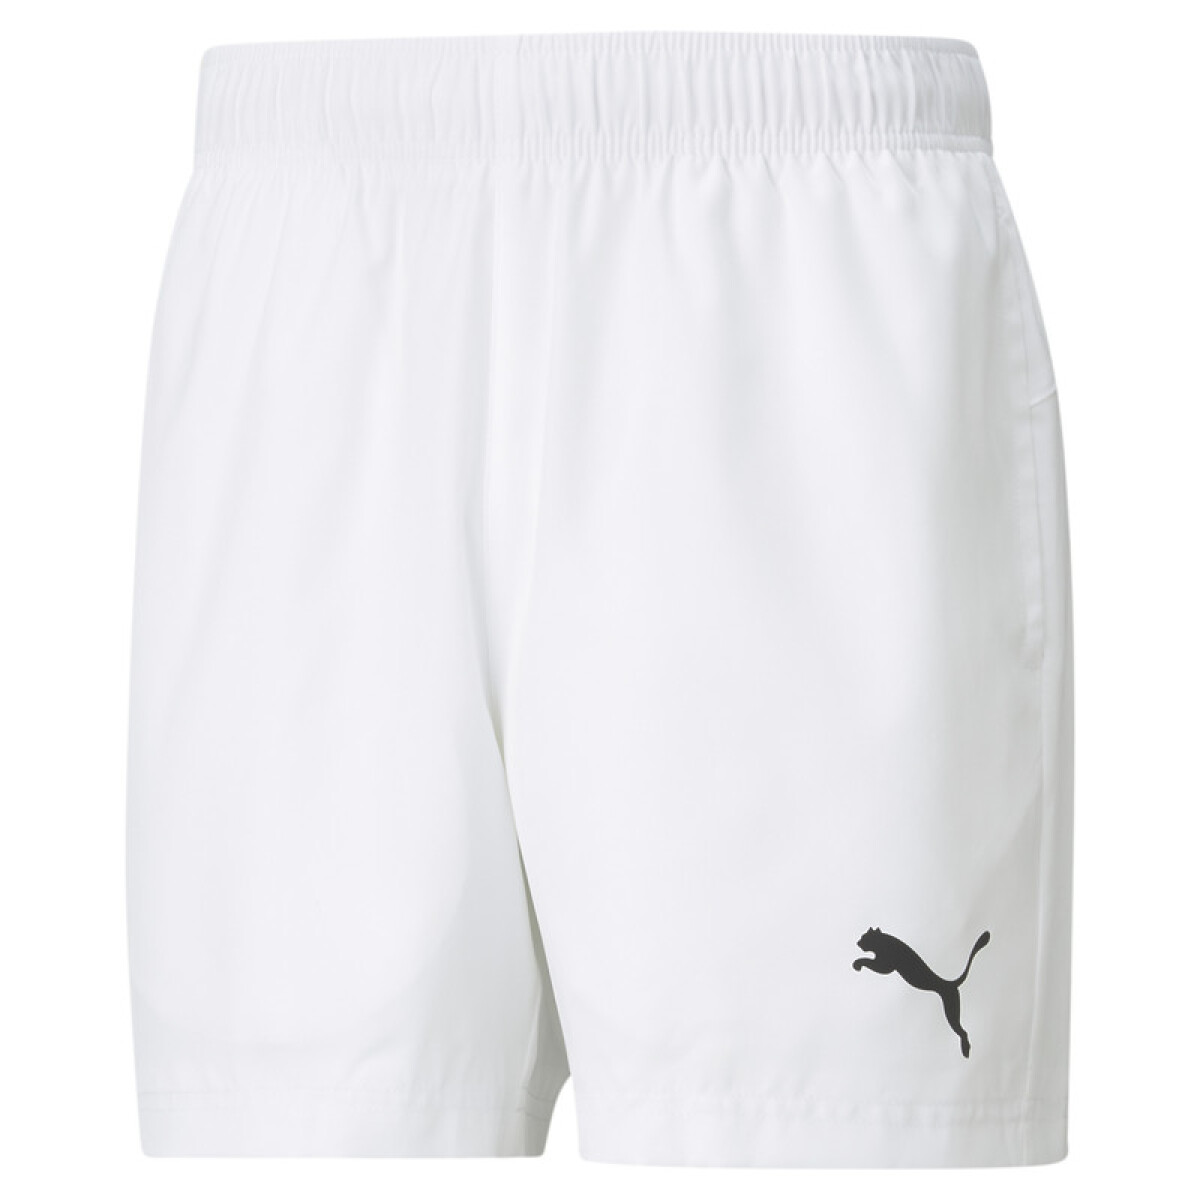 Active Woven Shorts 58672802 - Blanco 